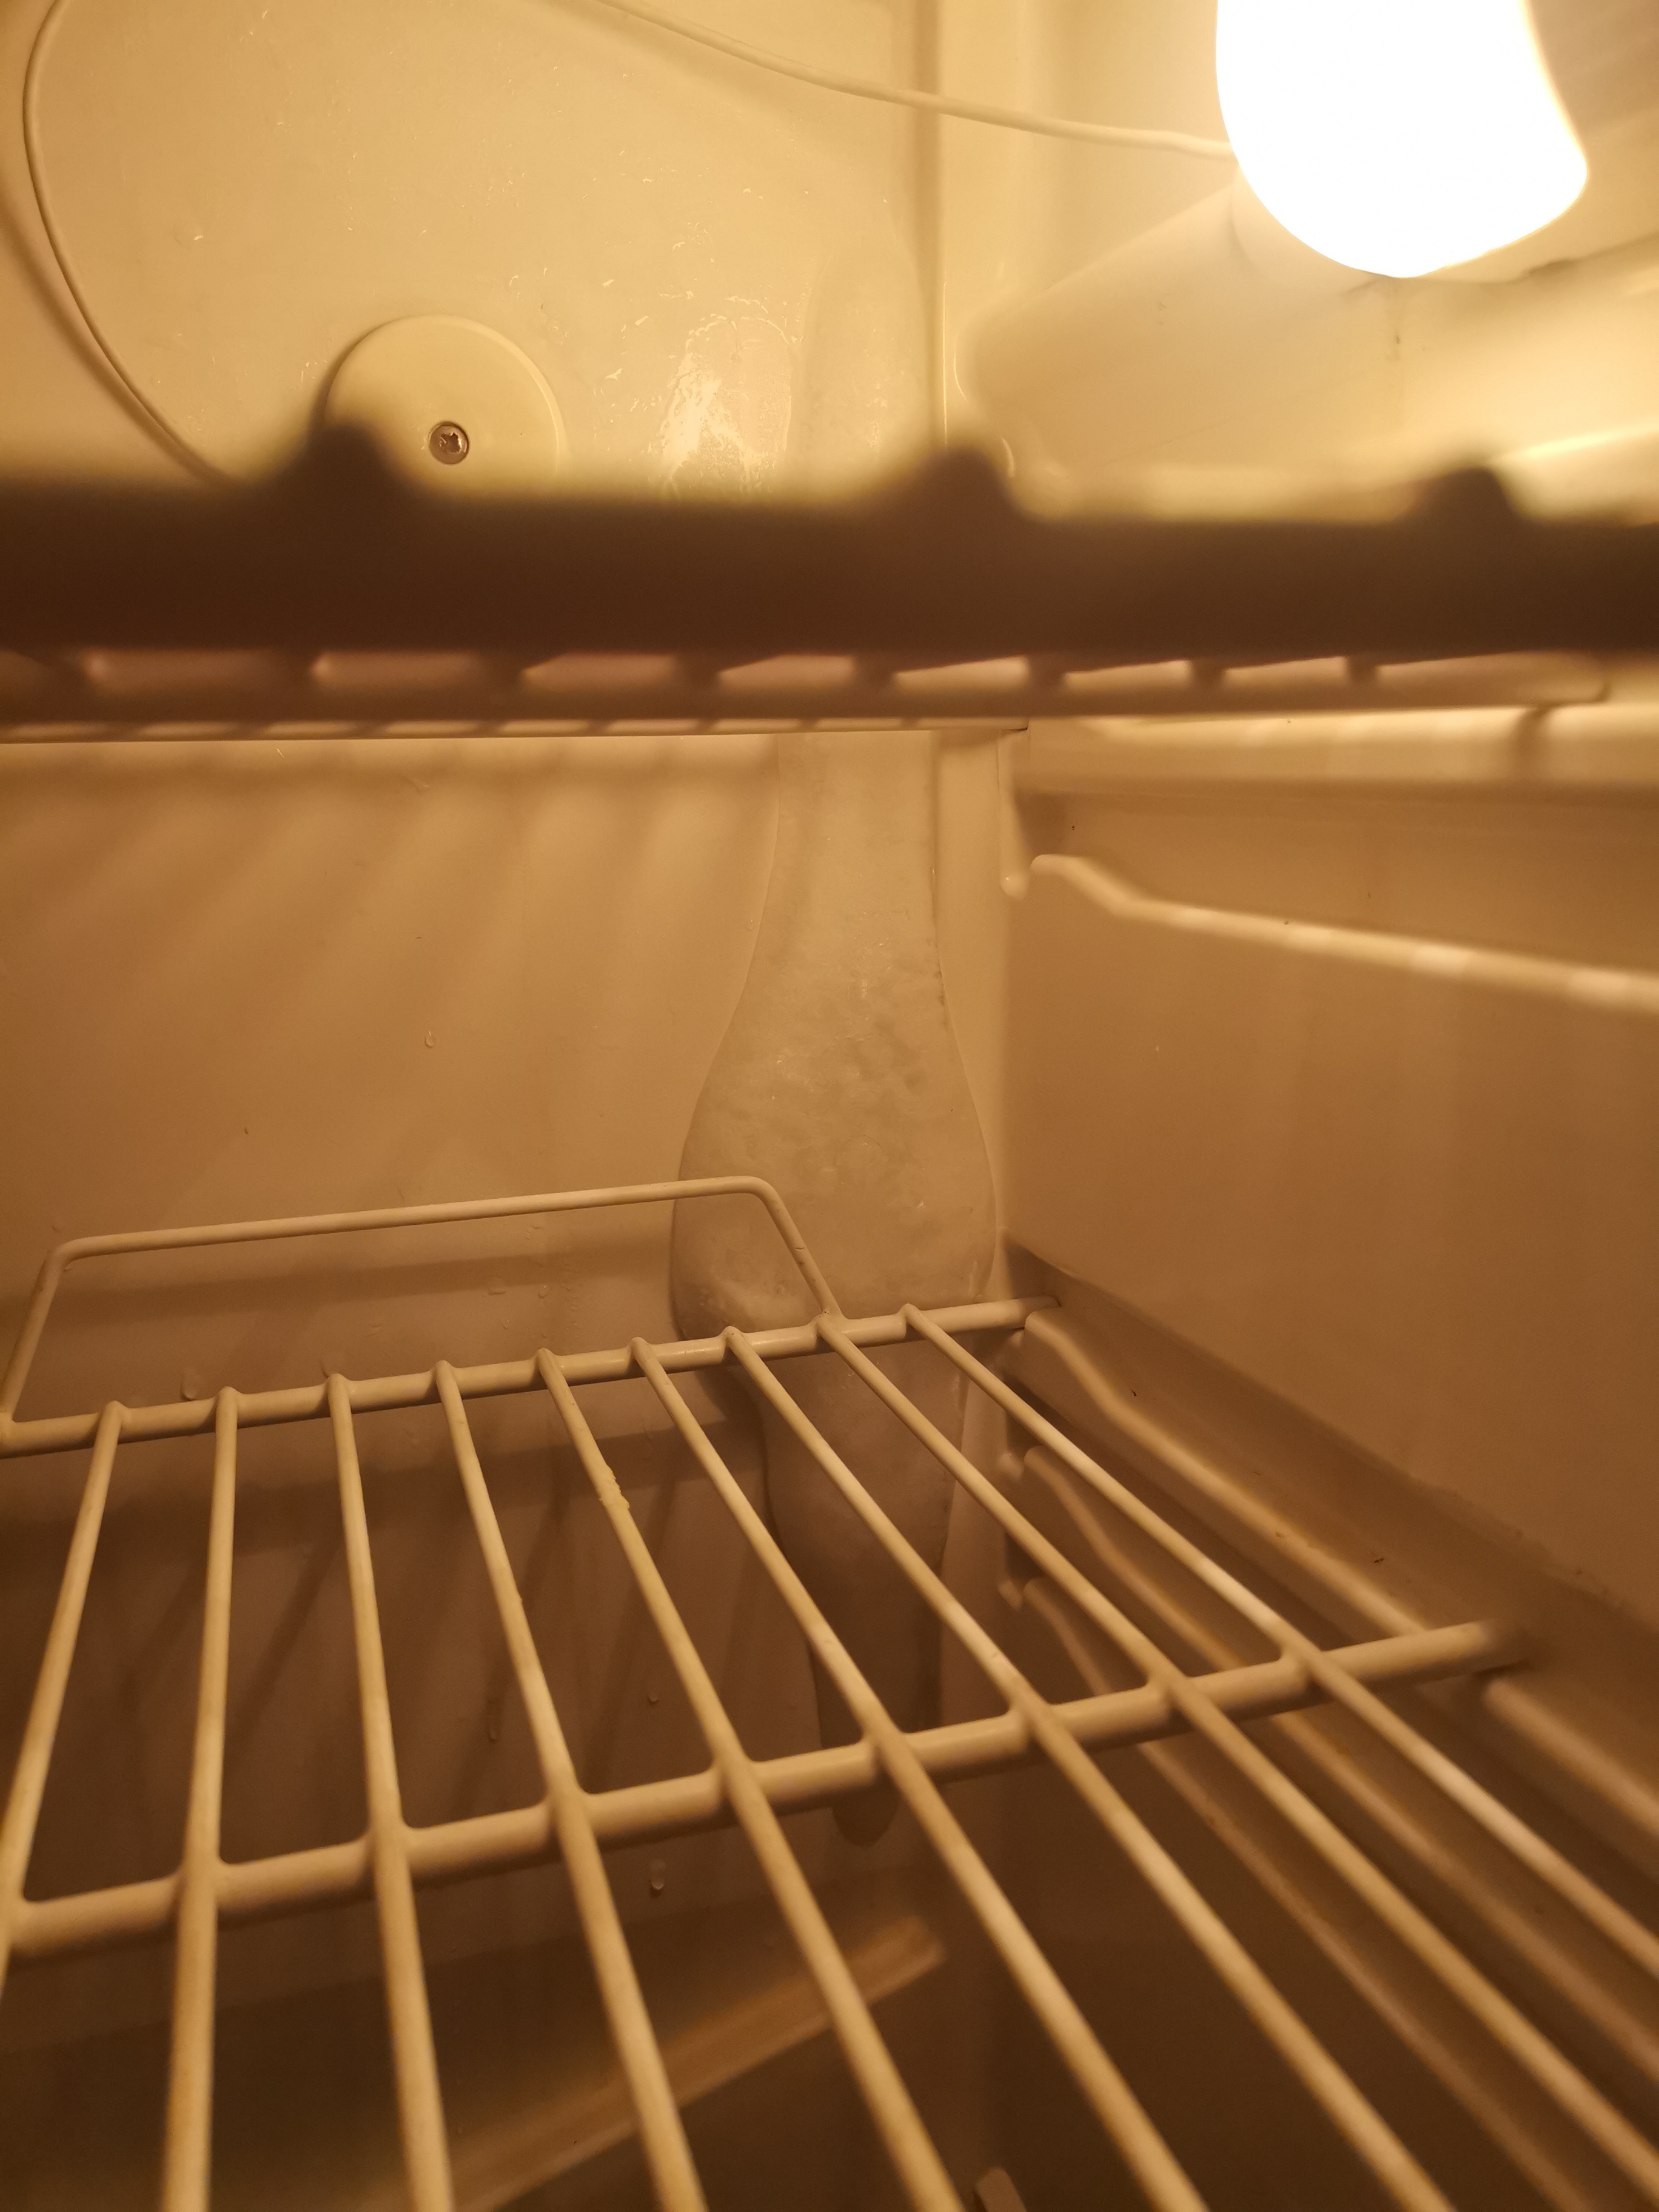 Намерзает холодильник индезит